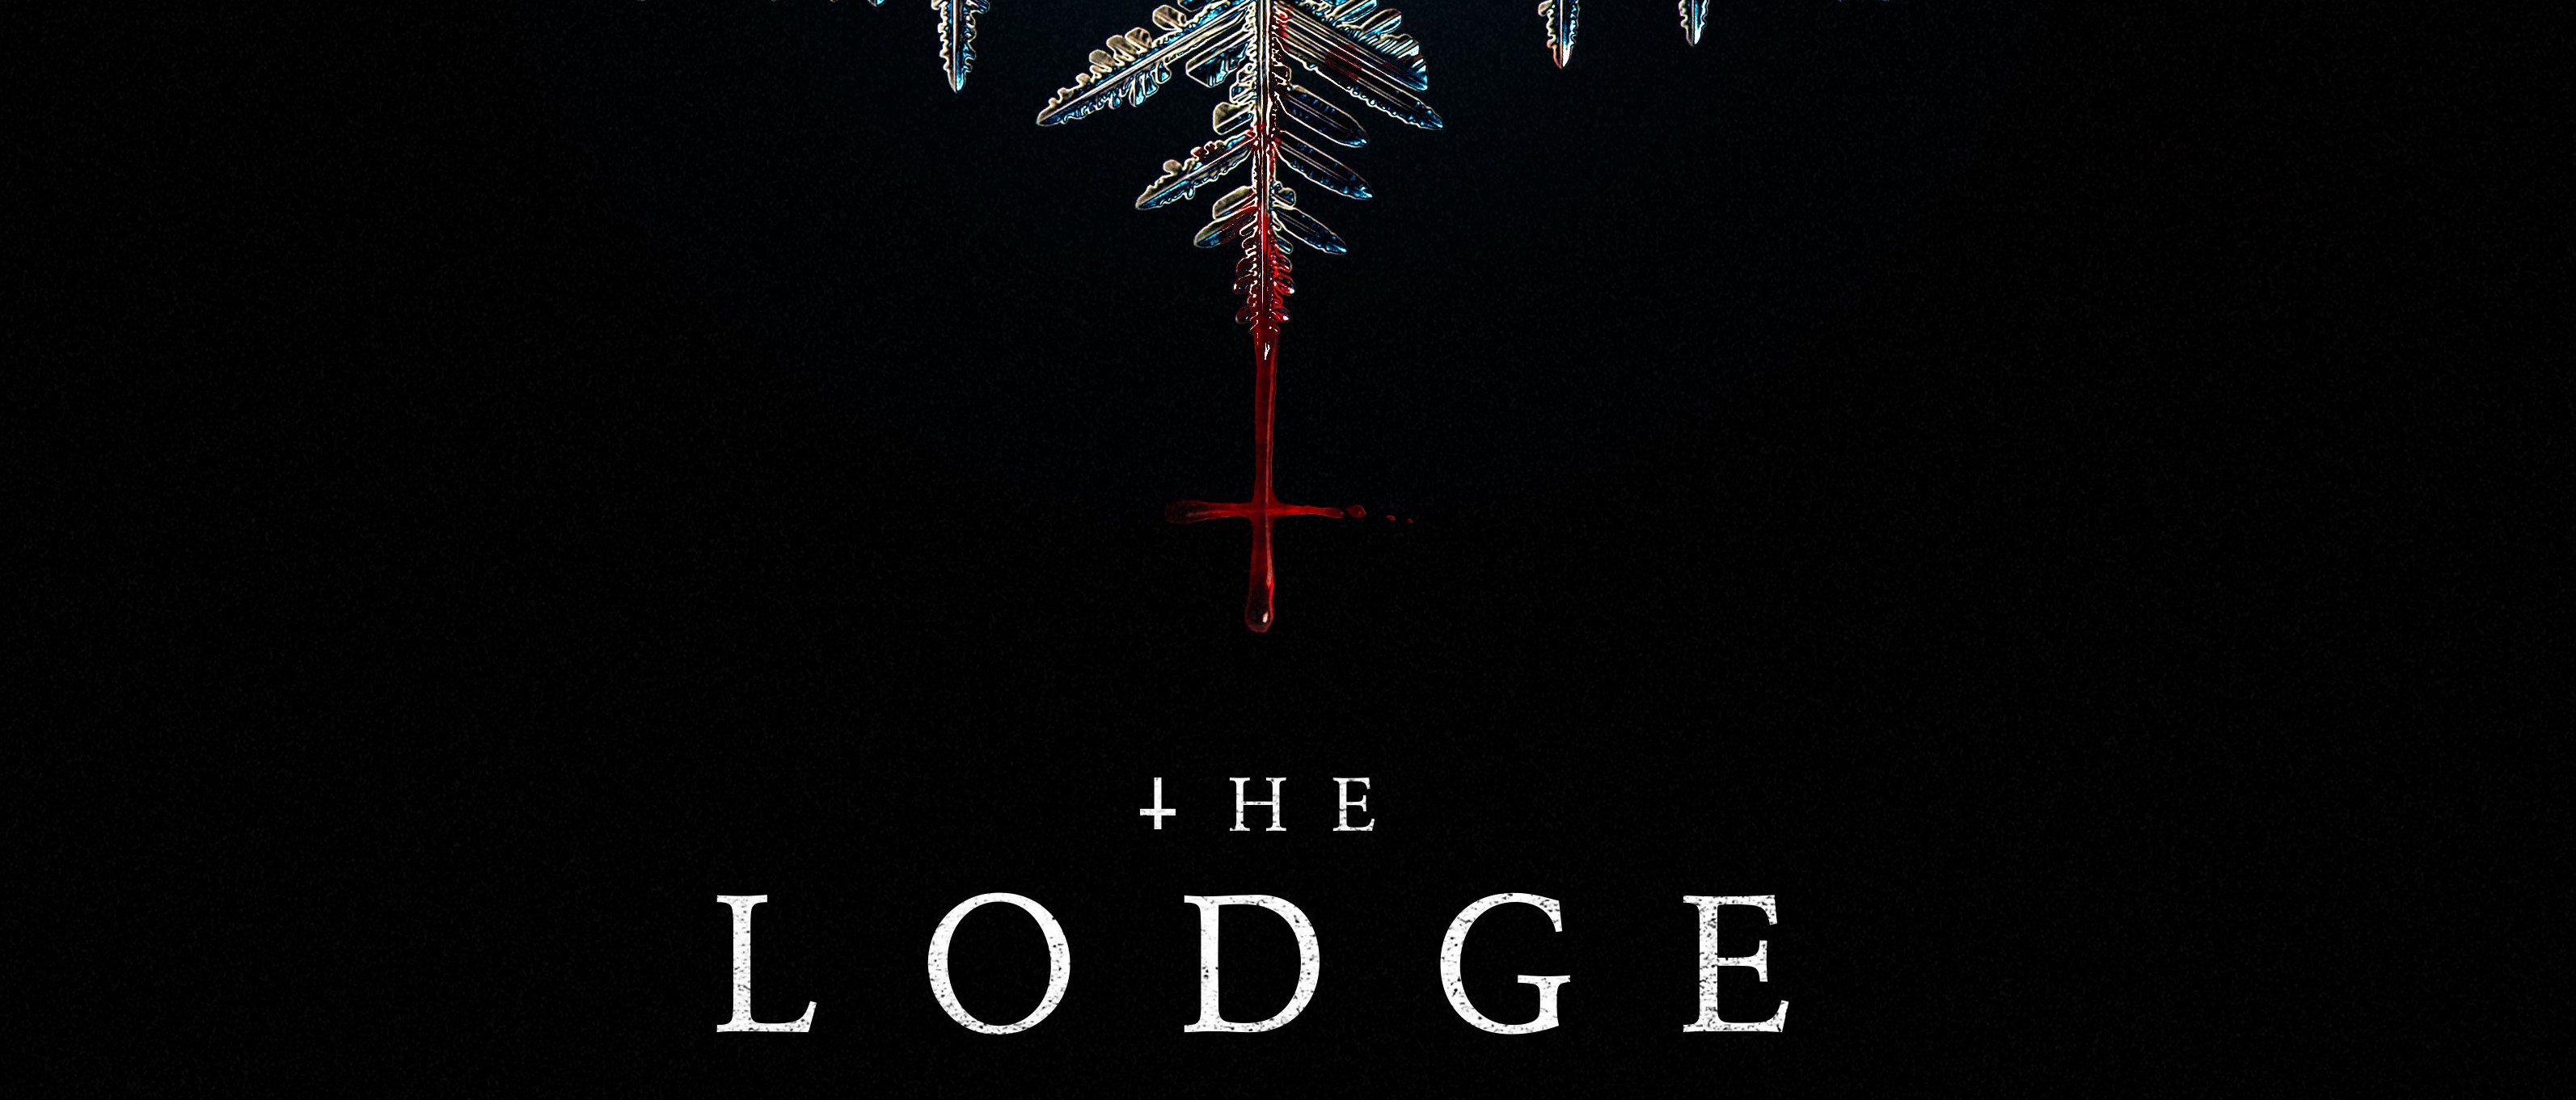 The Lodge: trailer e poster del nuovo film di Severin Fiala e Veronika Franz